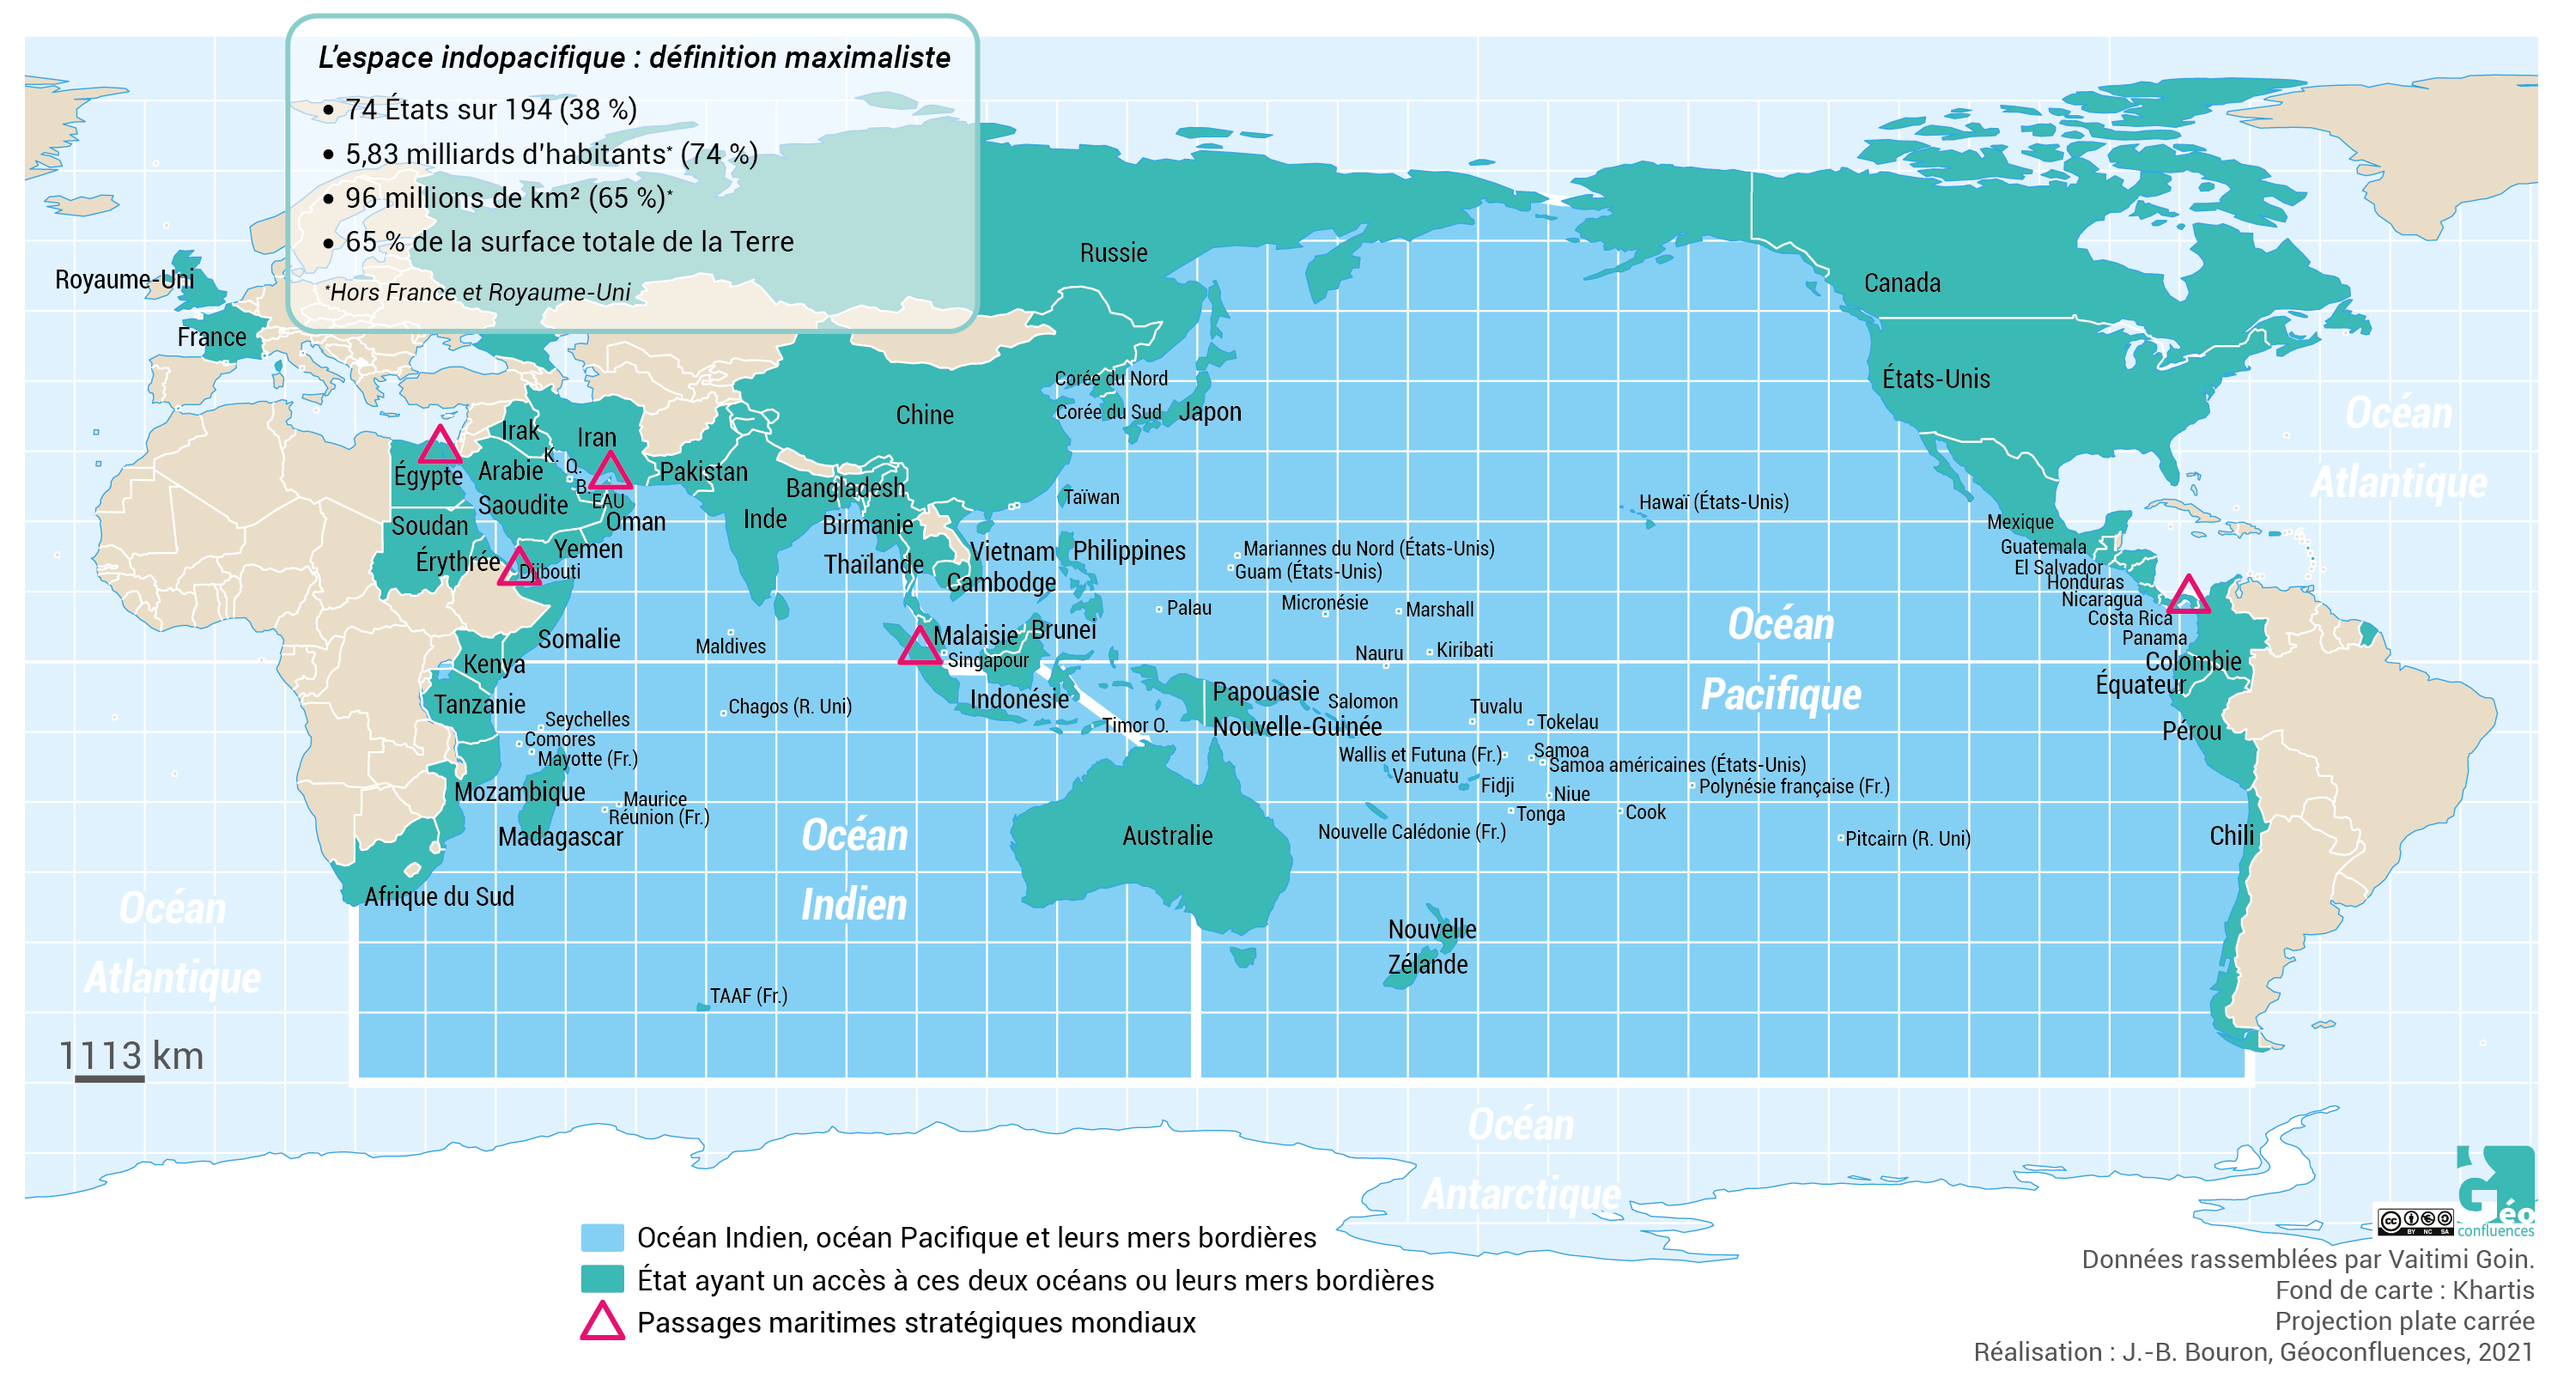 La définition maximaliste de l’Indopacifique : tous les espaces ayant un littoral sur au moins l’un des deux océans